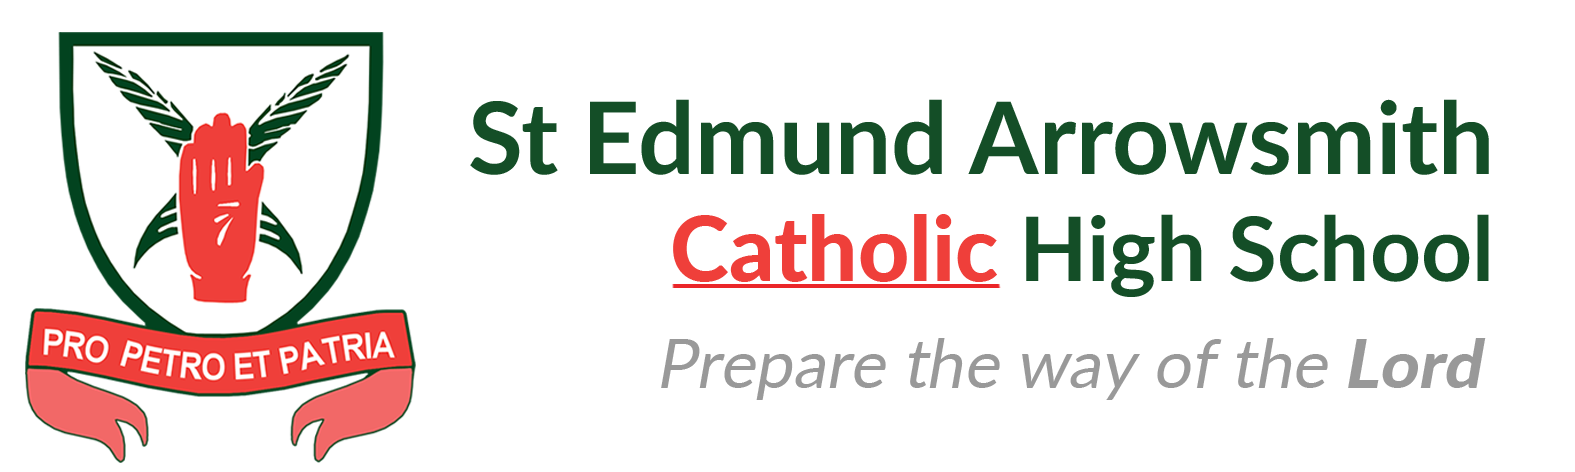 St Edmund Arrowsmith Catholic High School校徽